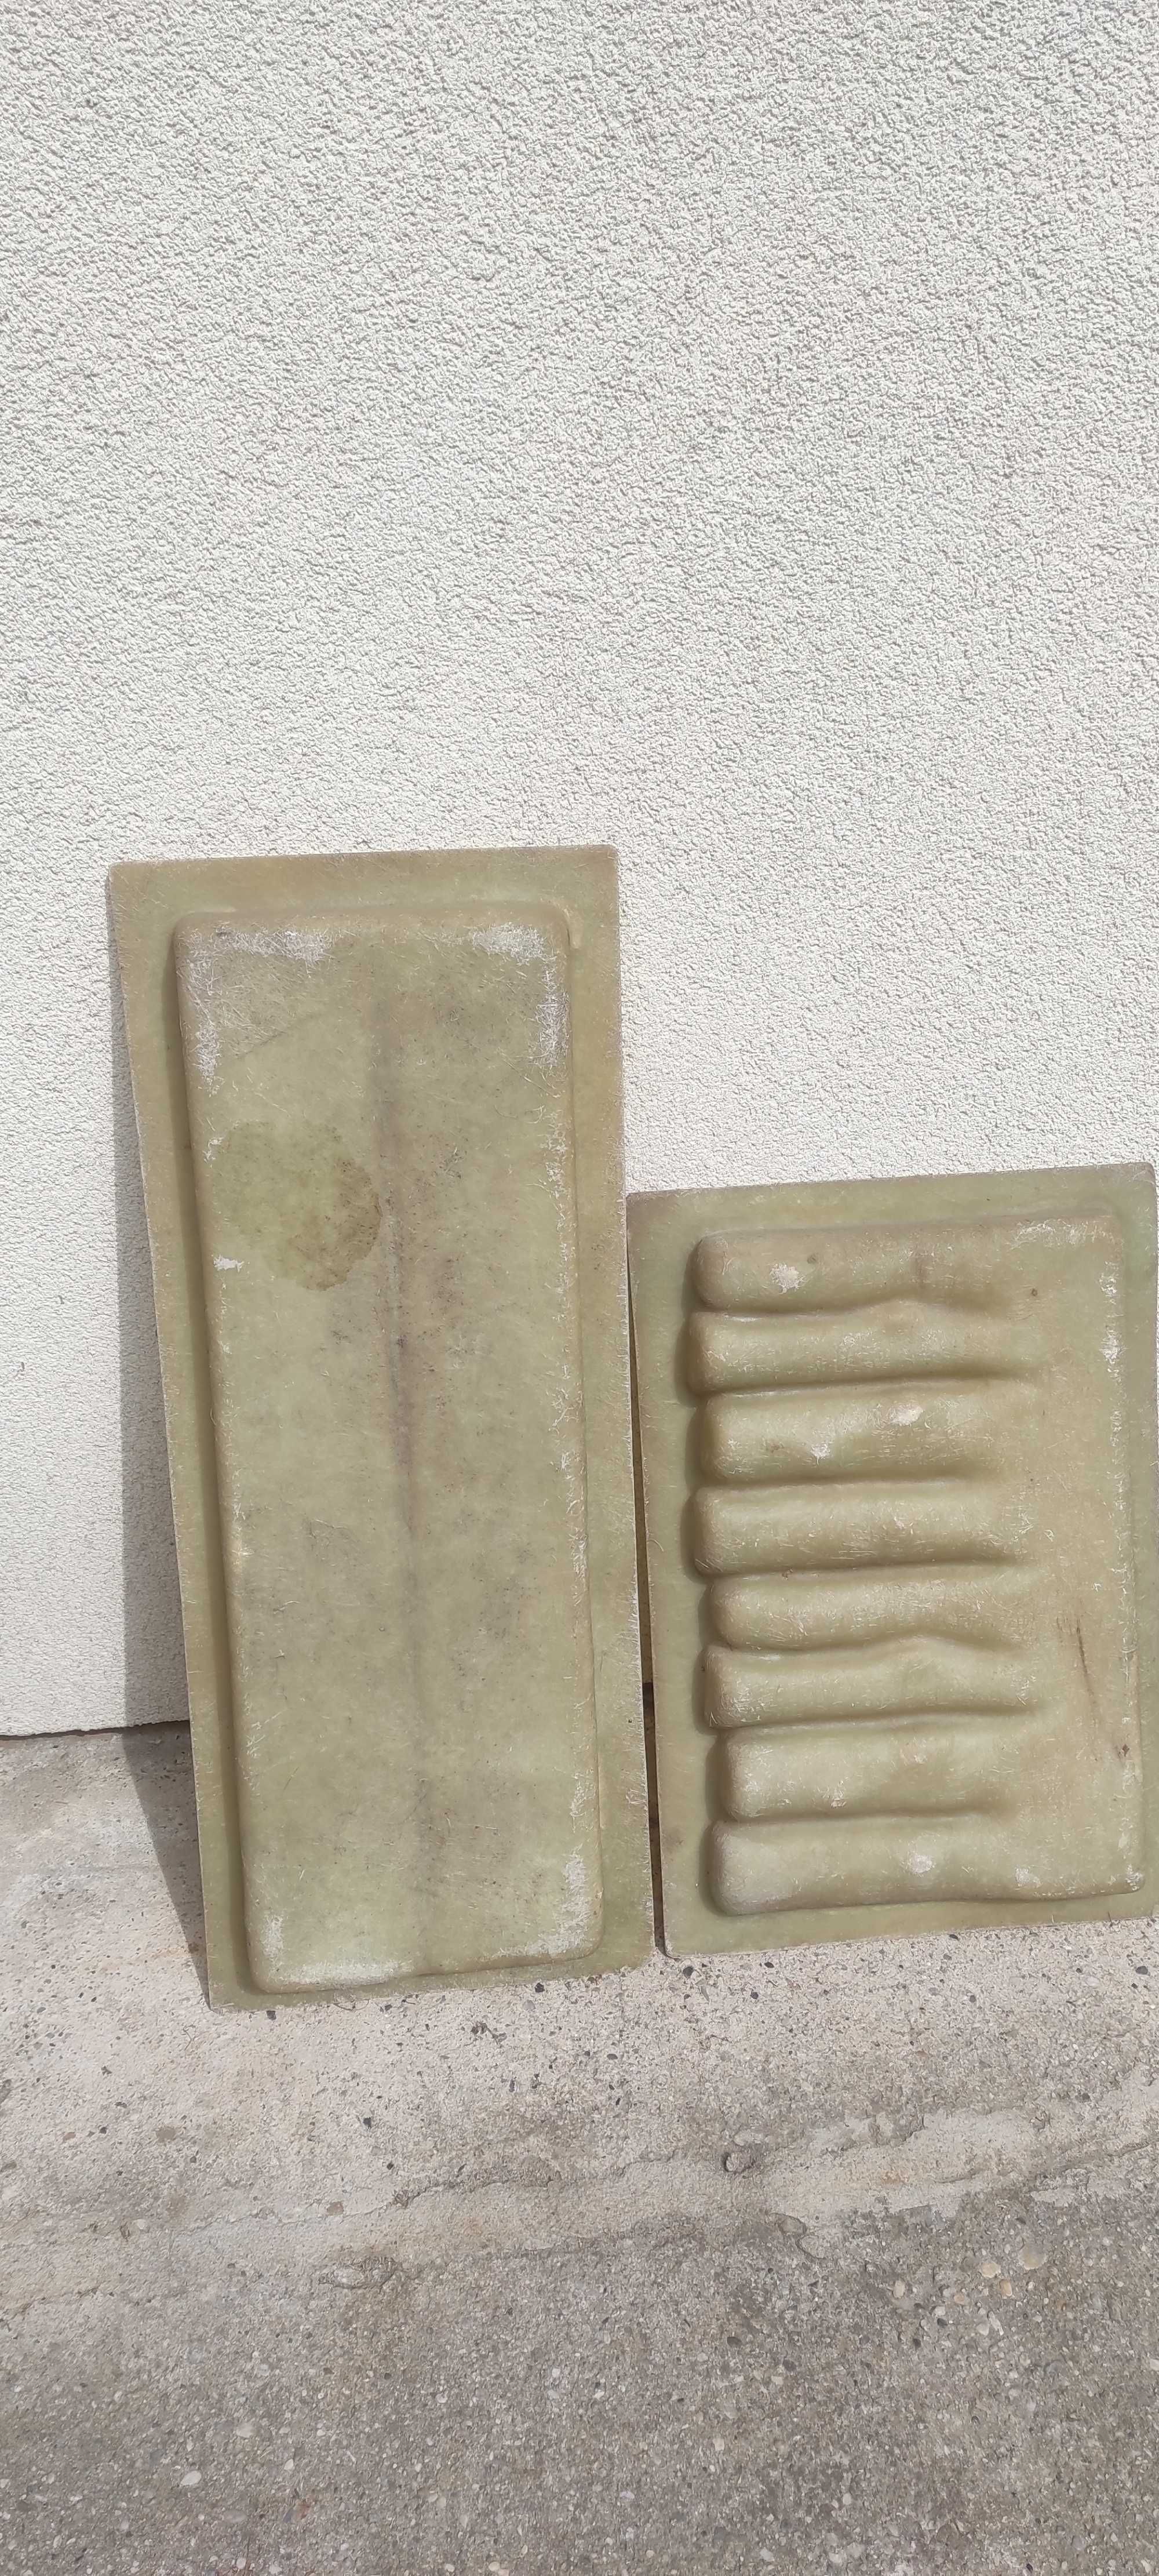 Formy do betonu z barwnikiem.